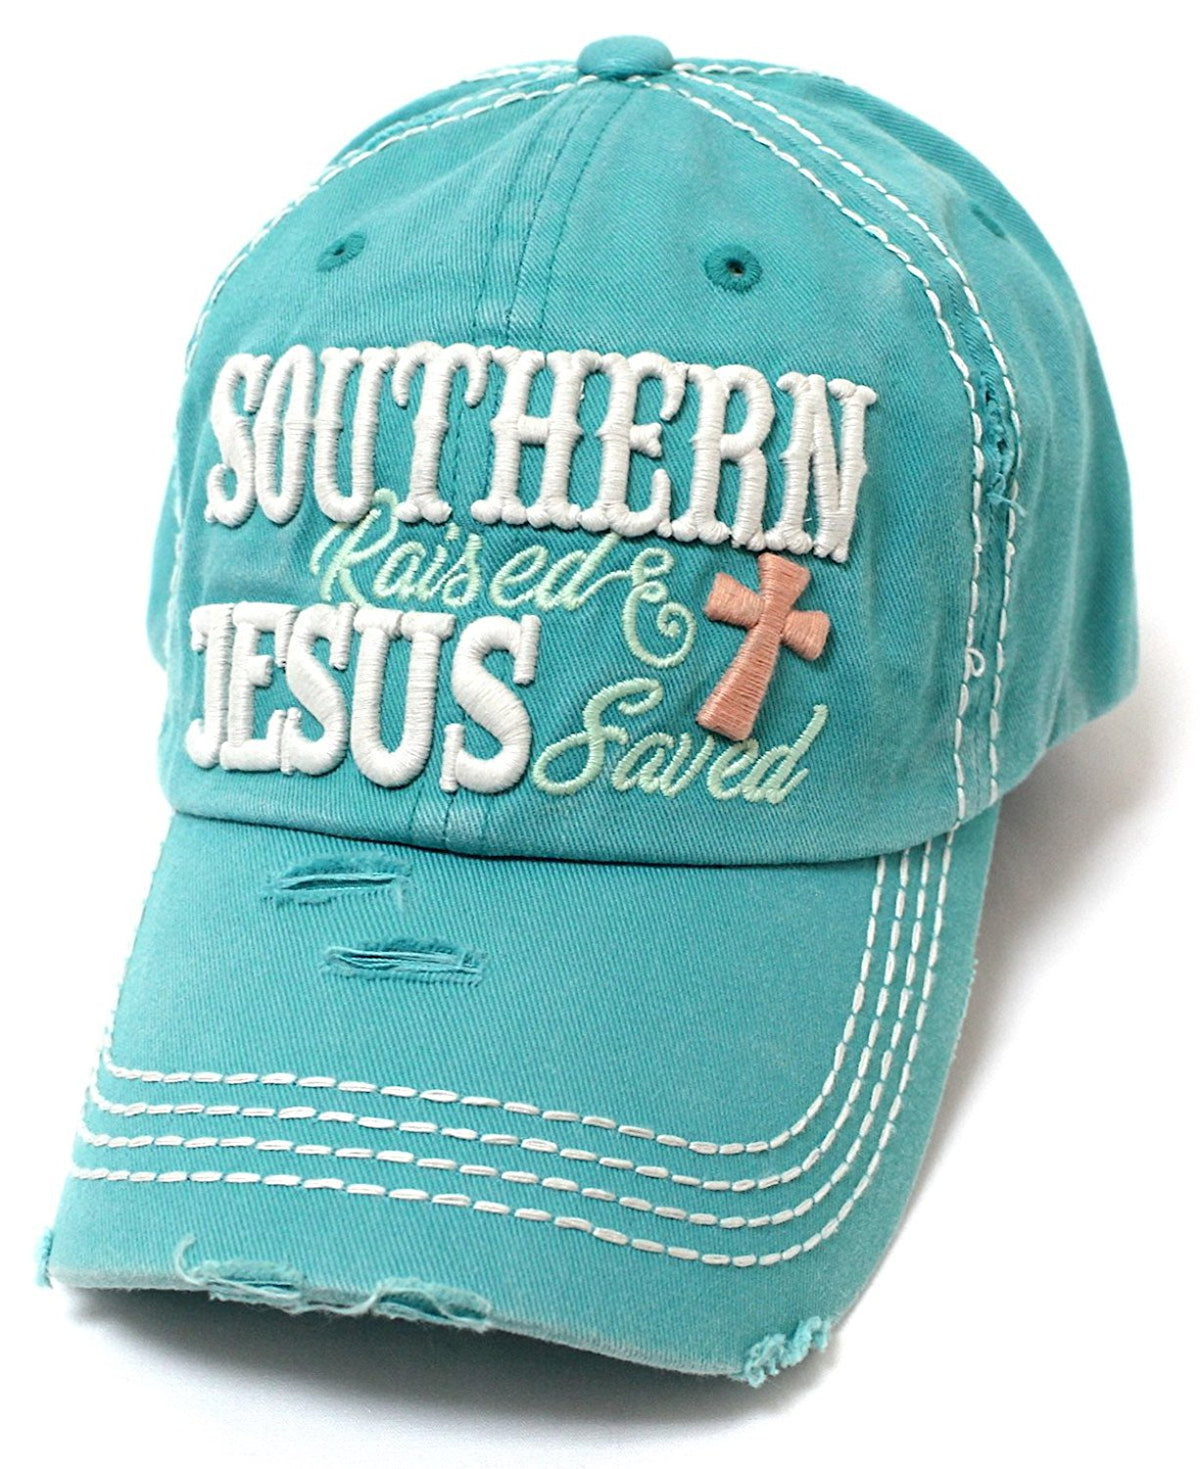 CAPS 'N VINTAGE Turquoise Southern Raised & Jesus Saved Cross Embroidery Hat - Caps 'N Vintage 